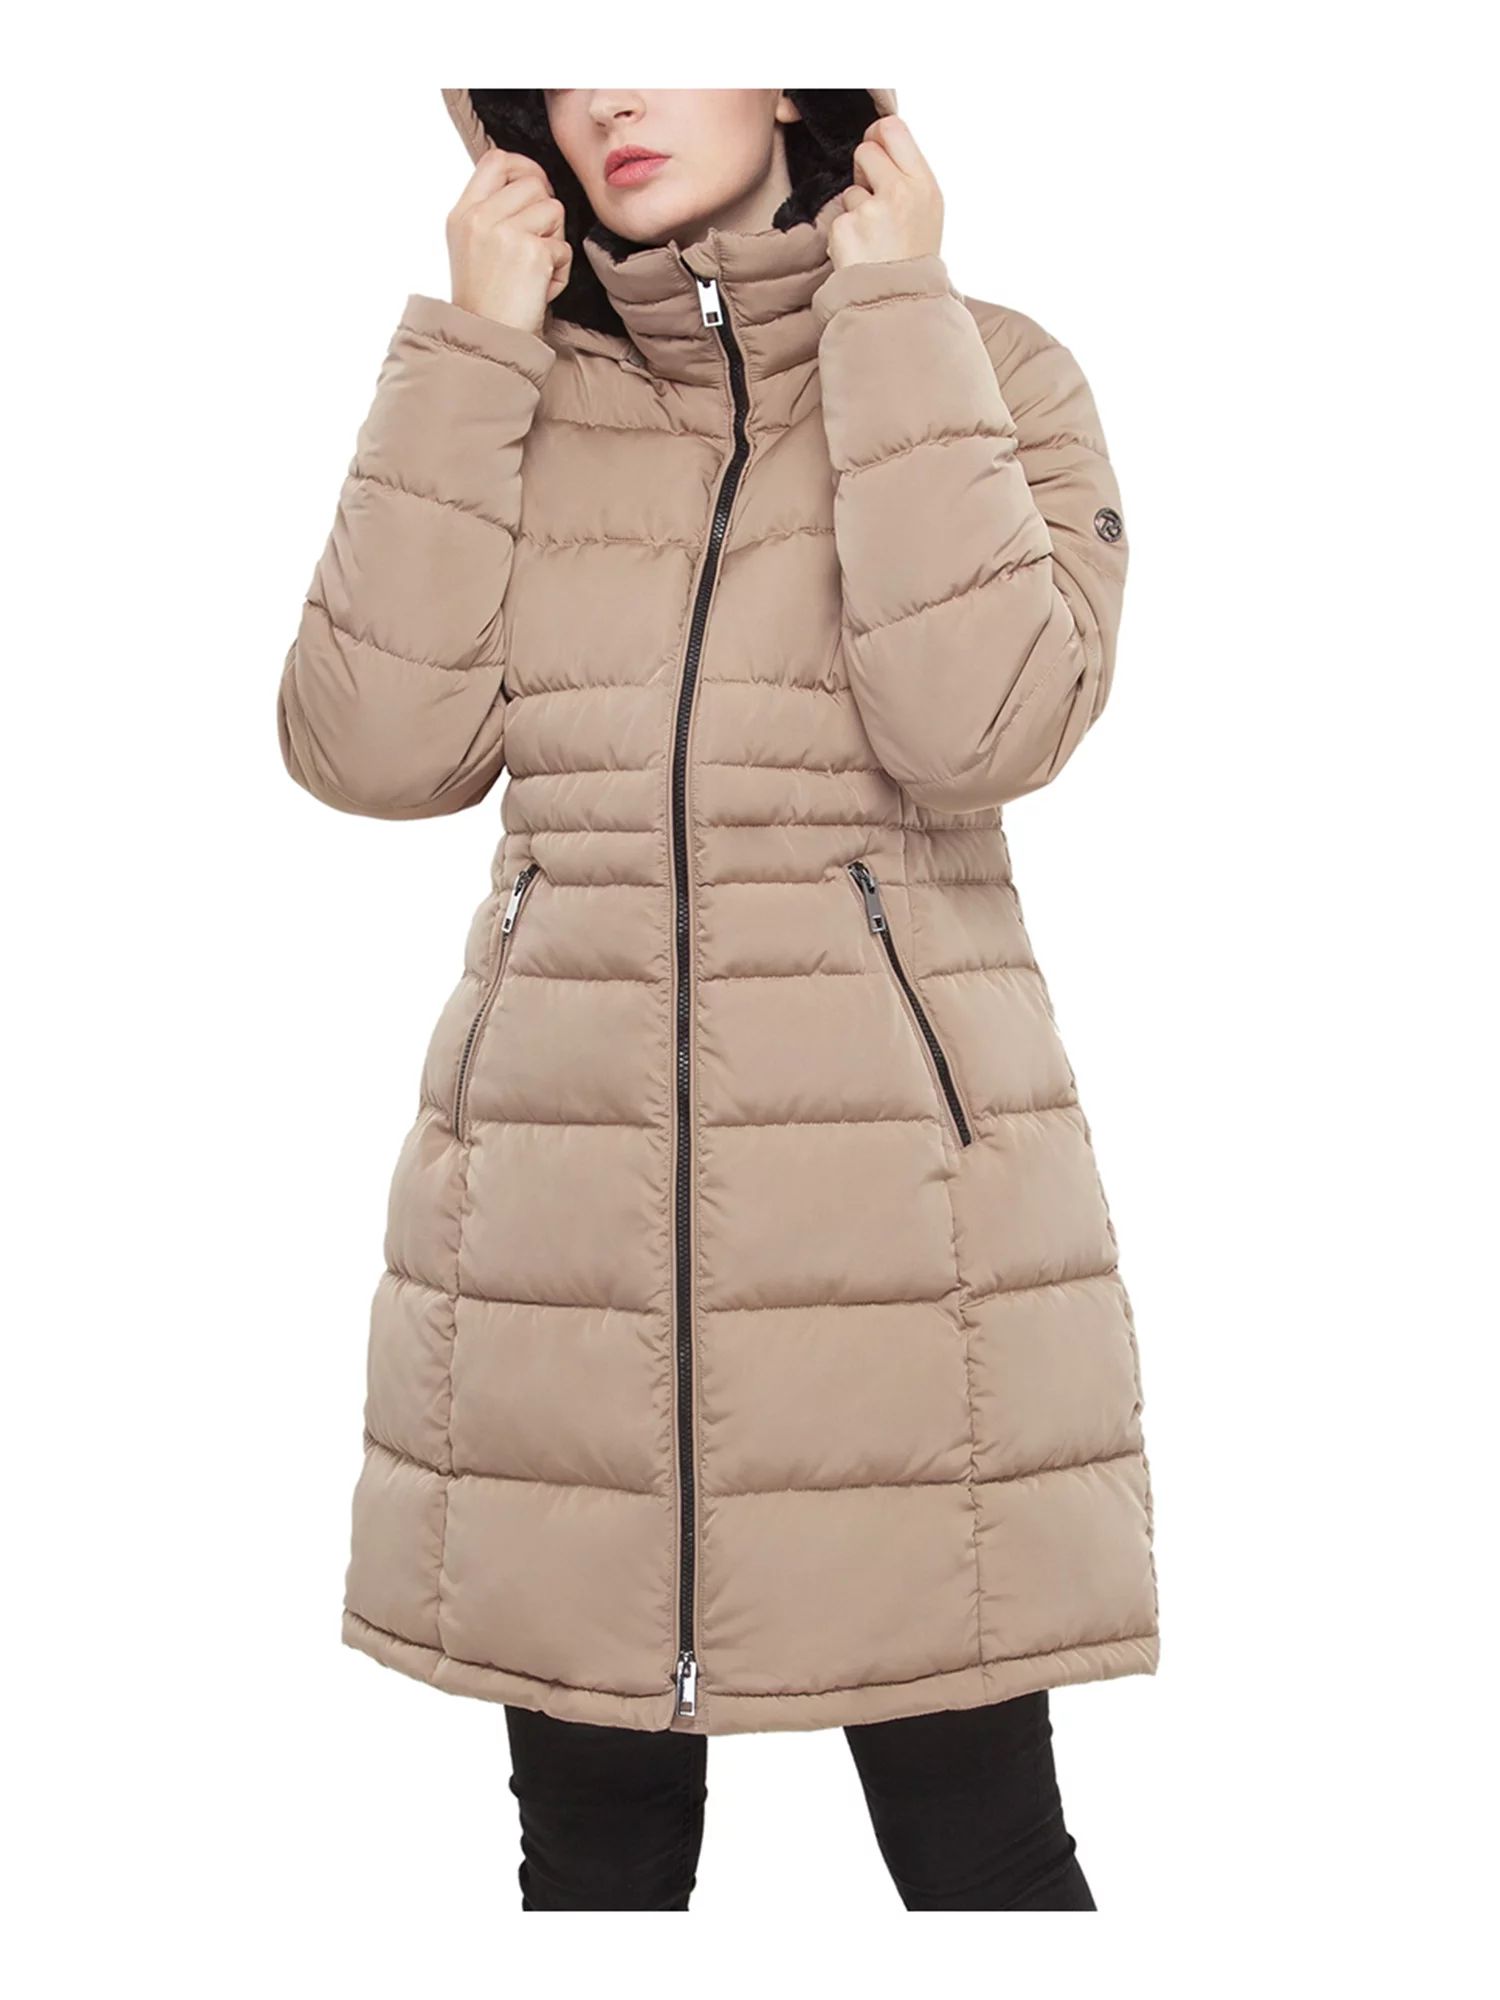 Rokka&Rolla Women's Heavy Long Winter Coat with Fleece Hood Parka Jacket | Walmart (US)